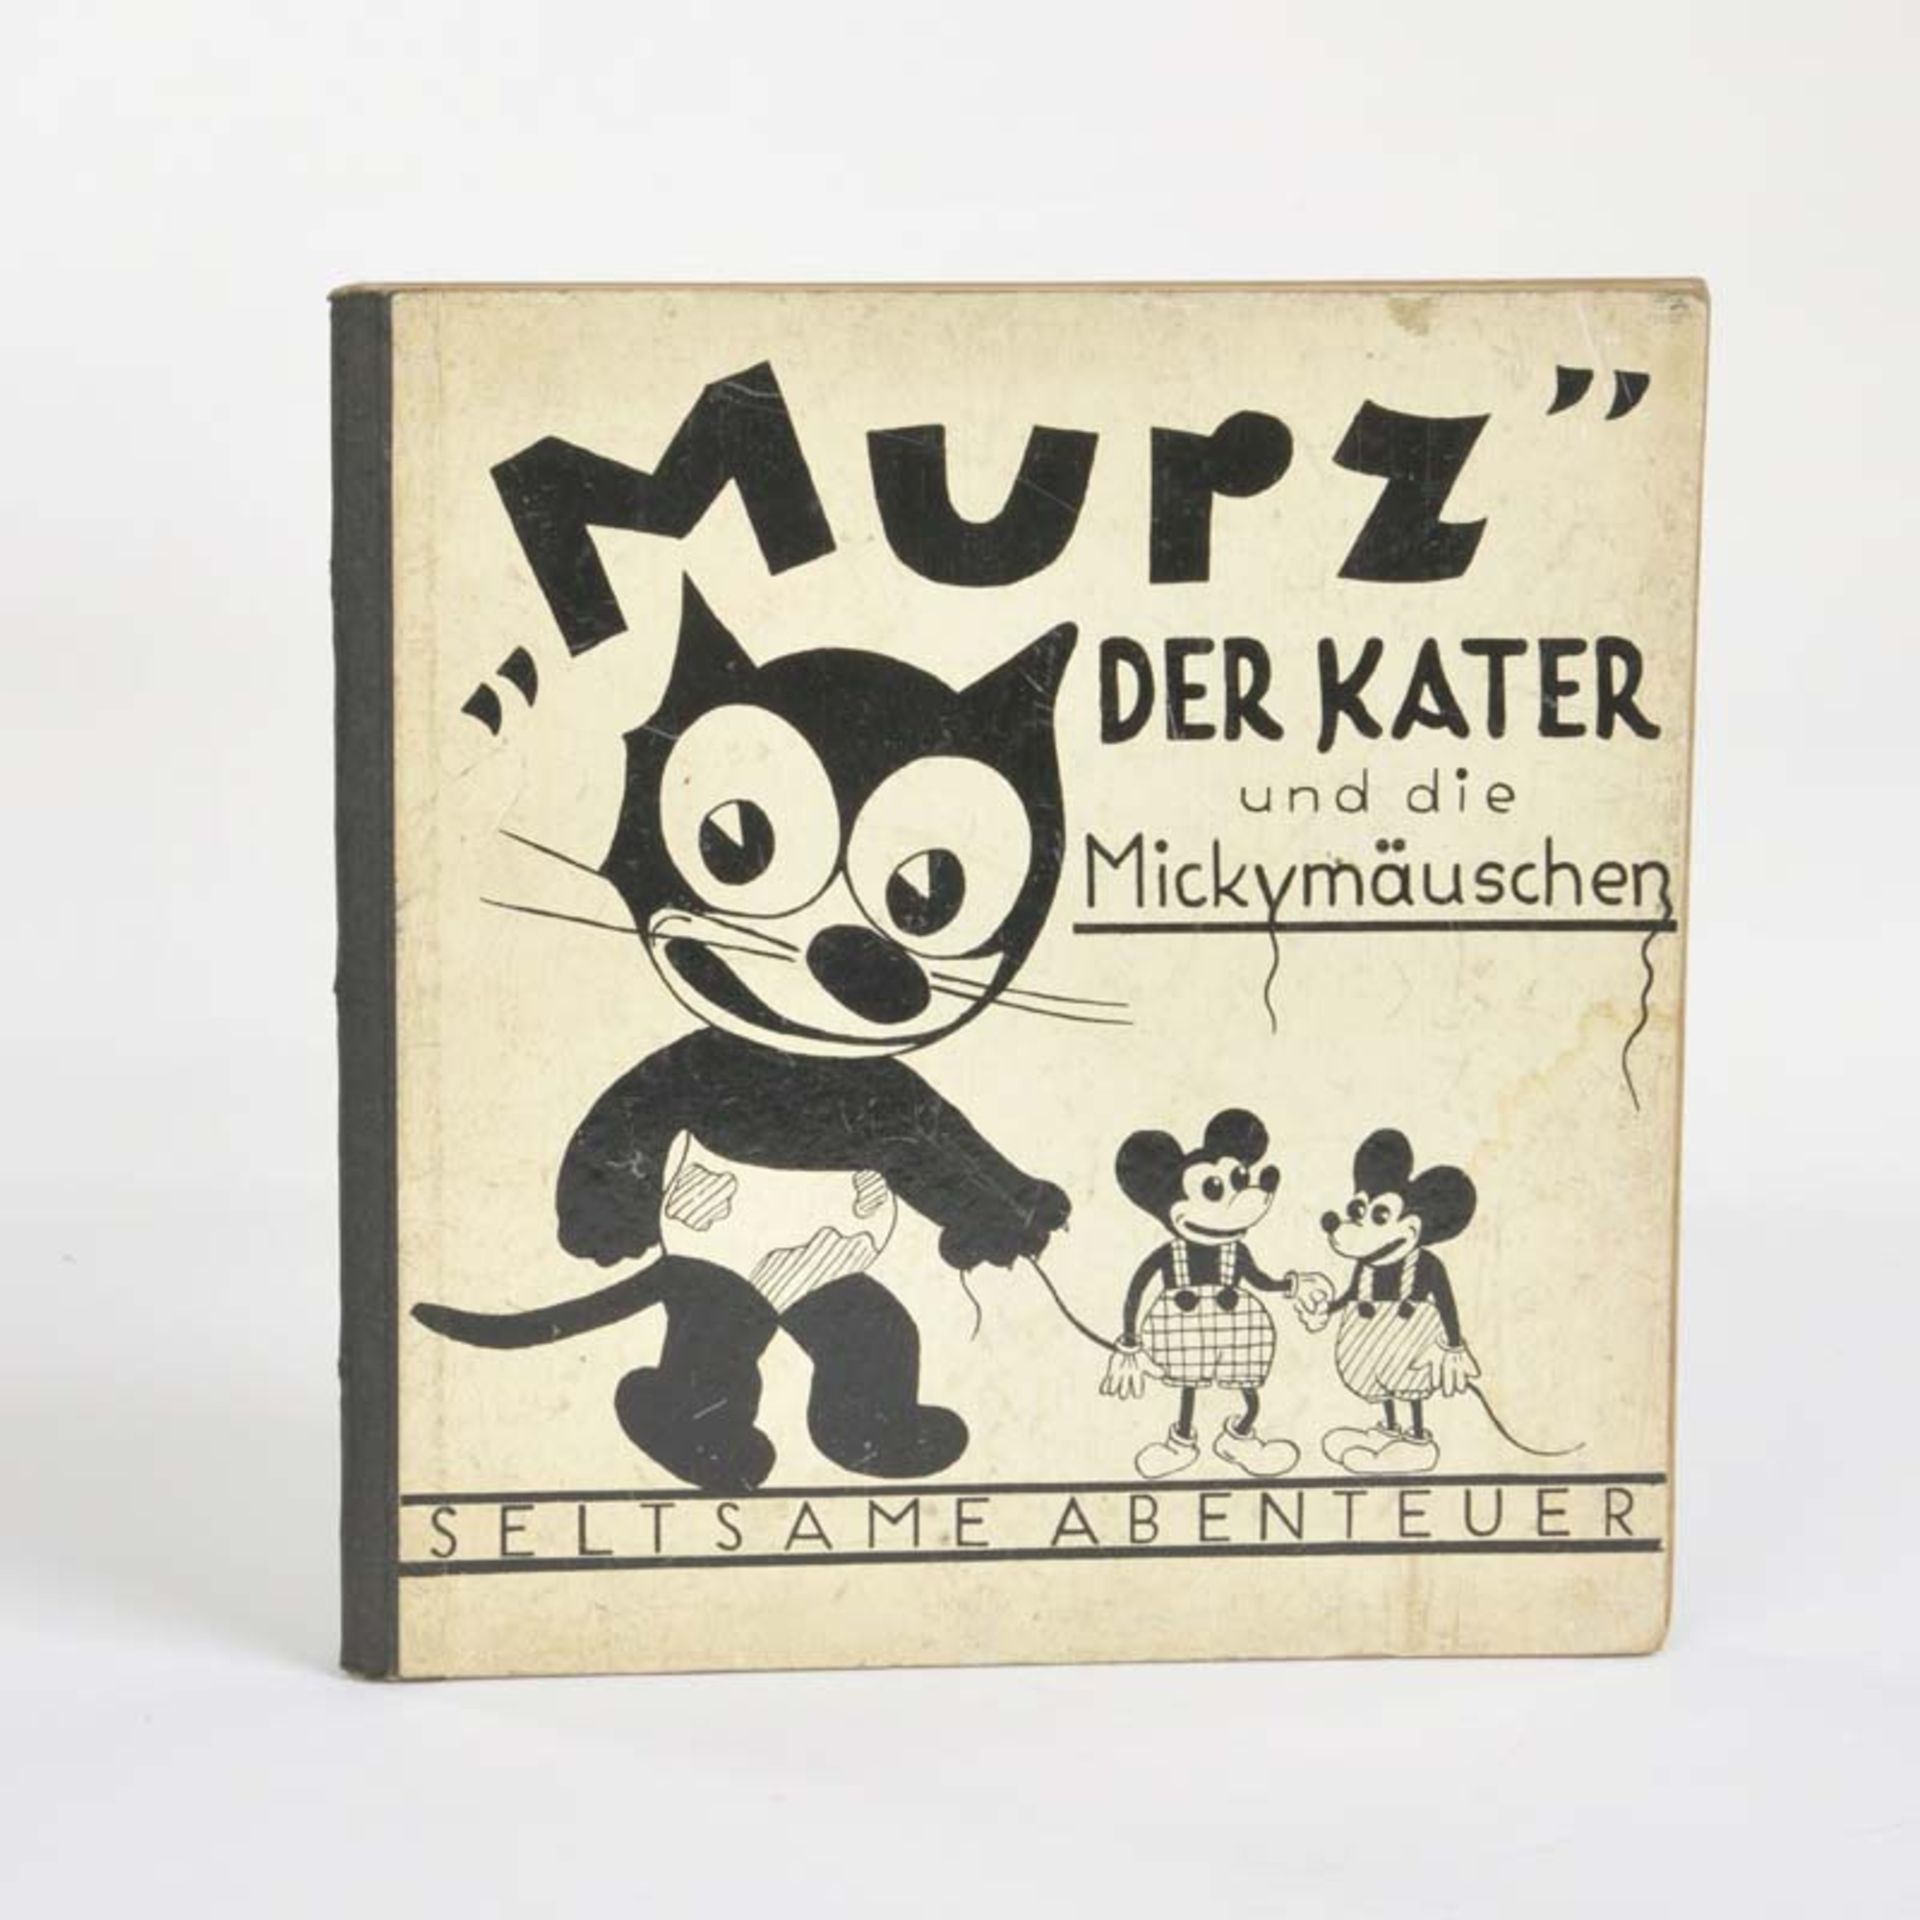 Children's Book "Murz der Kater und die Mickymäuschen", Germany pw, min. traces of age, good